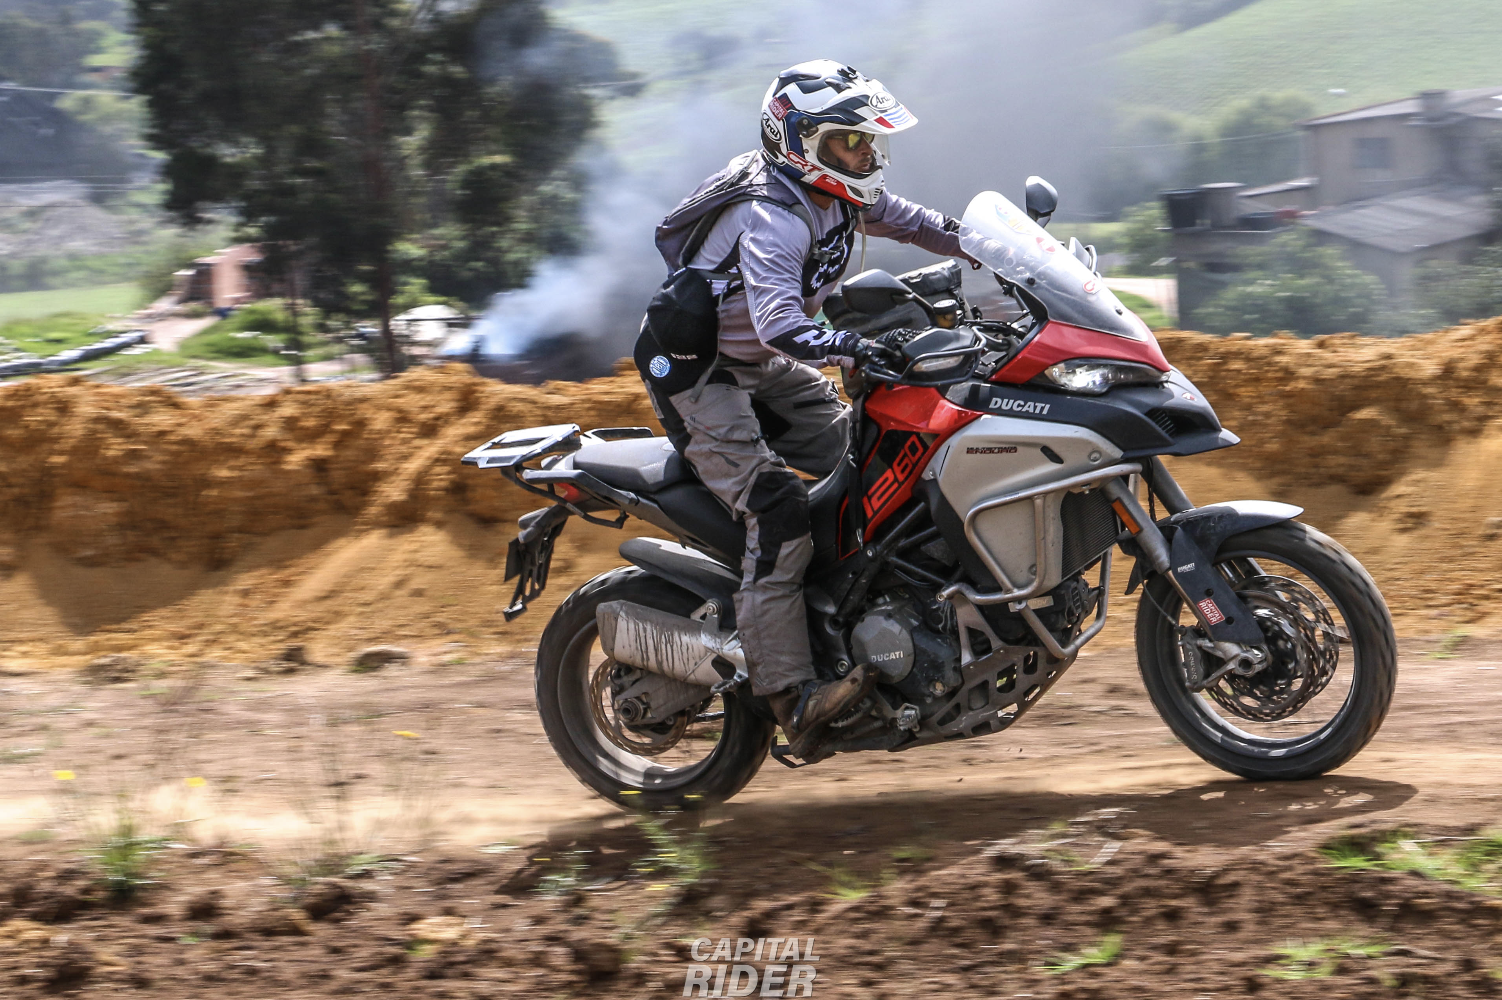 Cursos de moto alto cilindraje bmw motorrad ducati ktm Capital Rider colombia